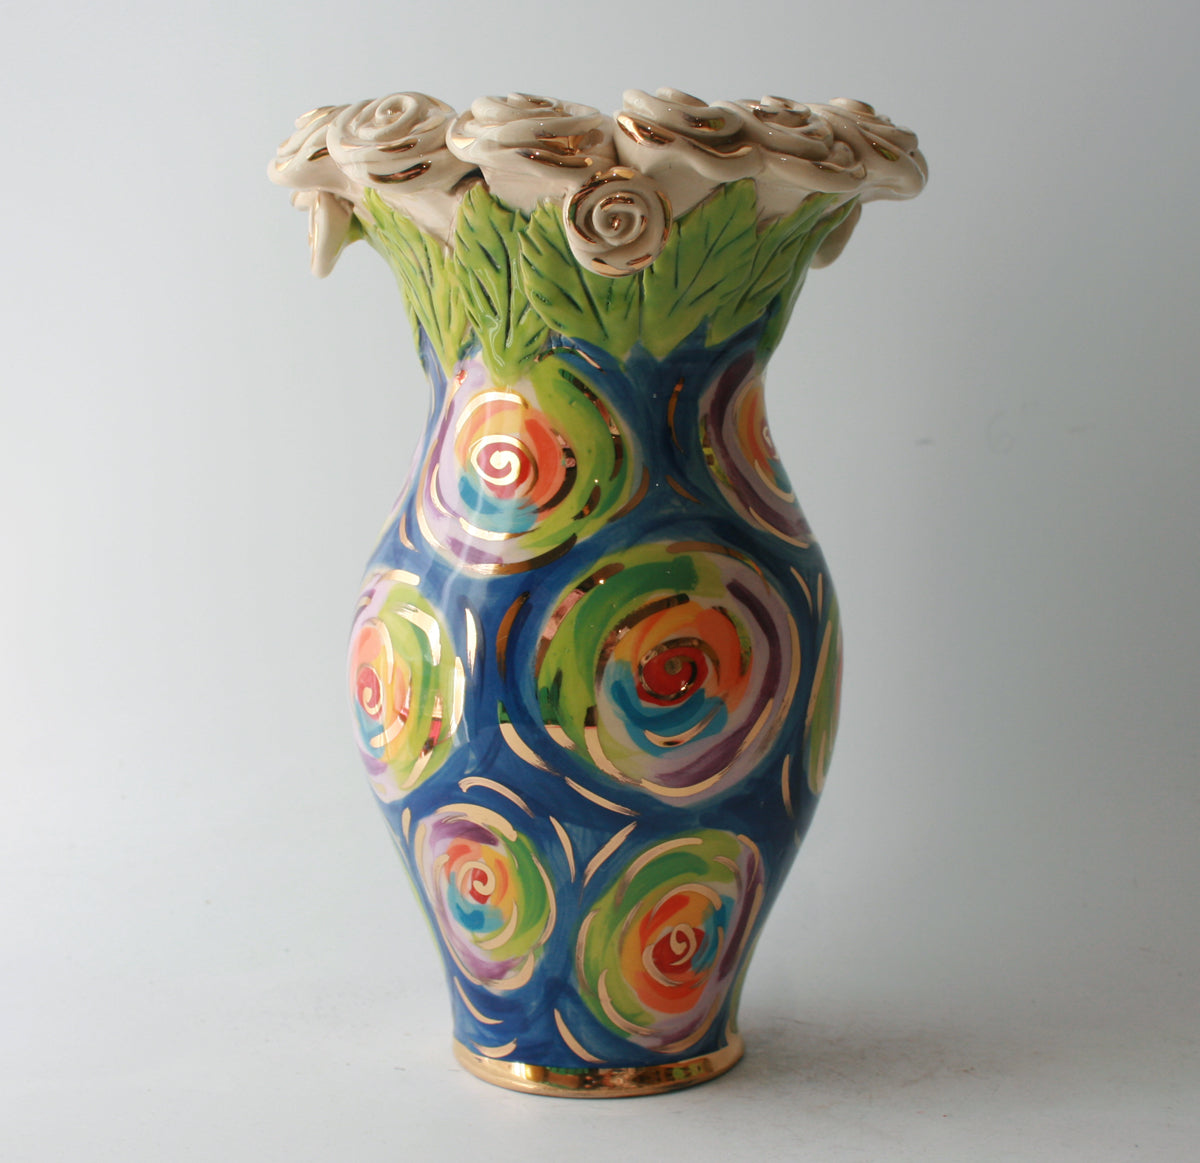 Medium Rose Encrusted Vase in Swirls